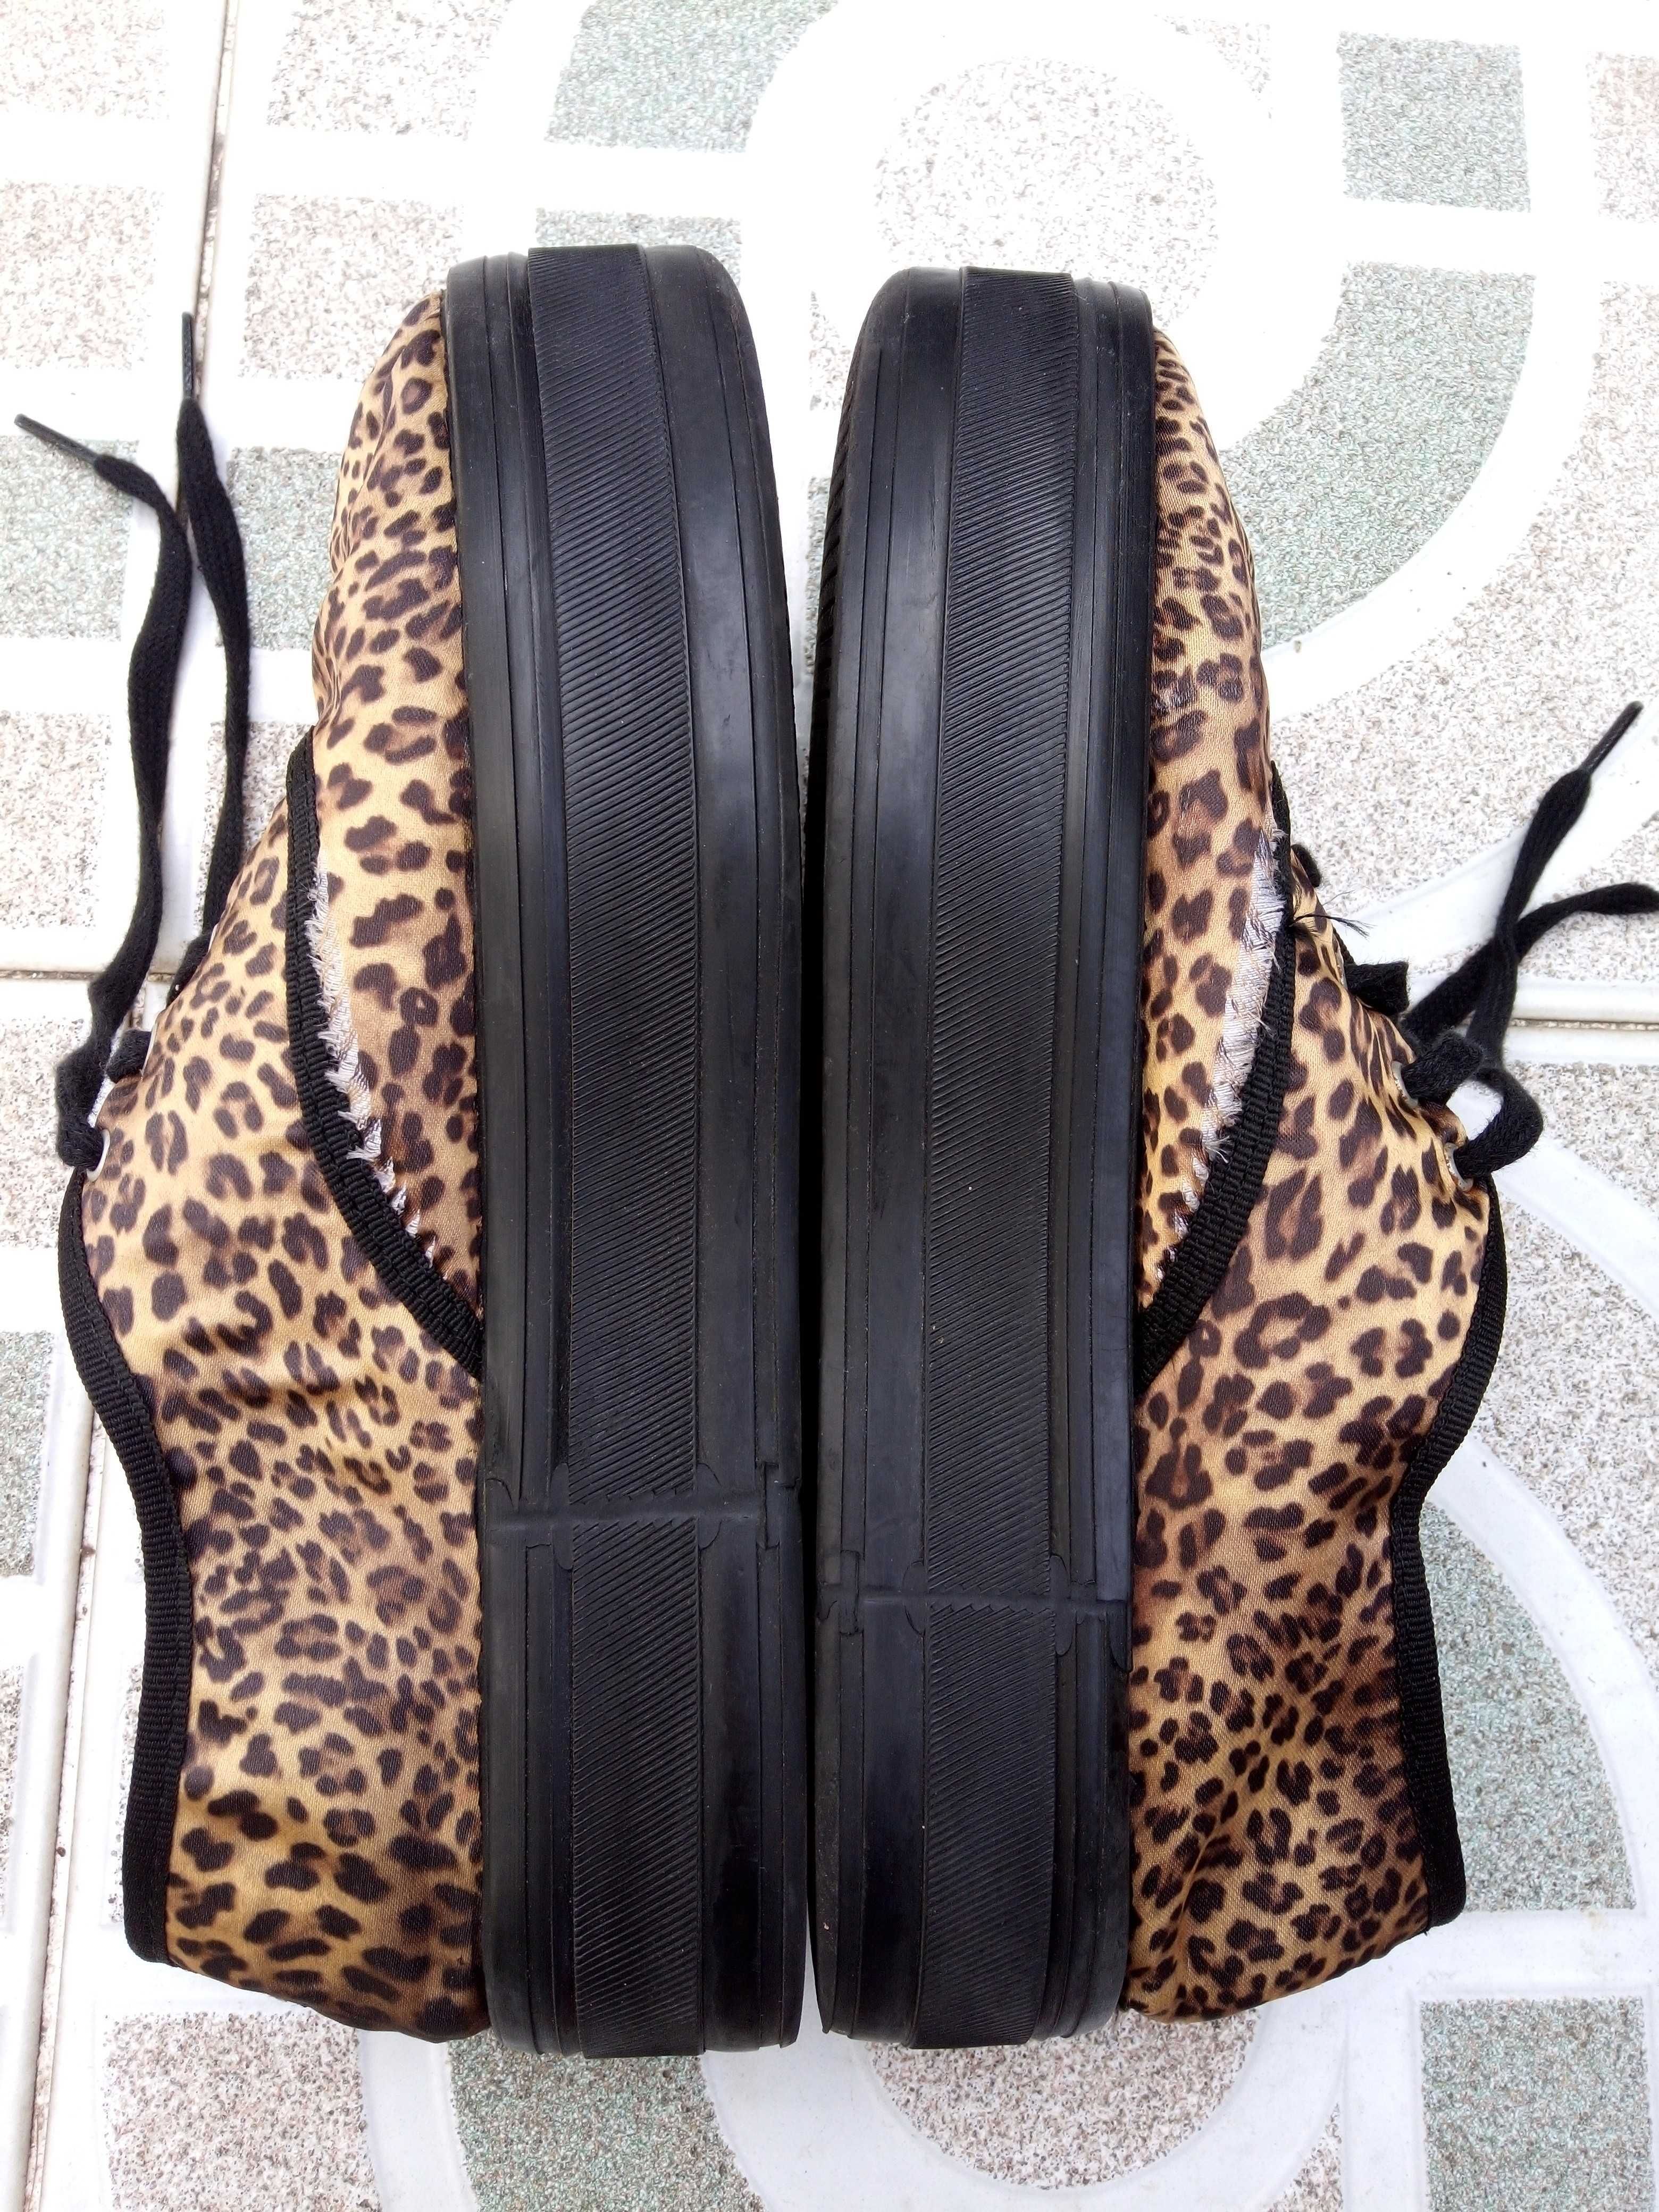 Sapatilhas Zara plataforma pretas tigresa